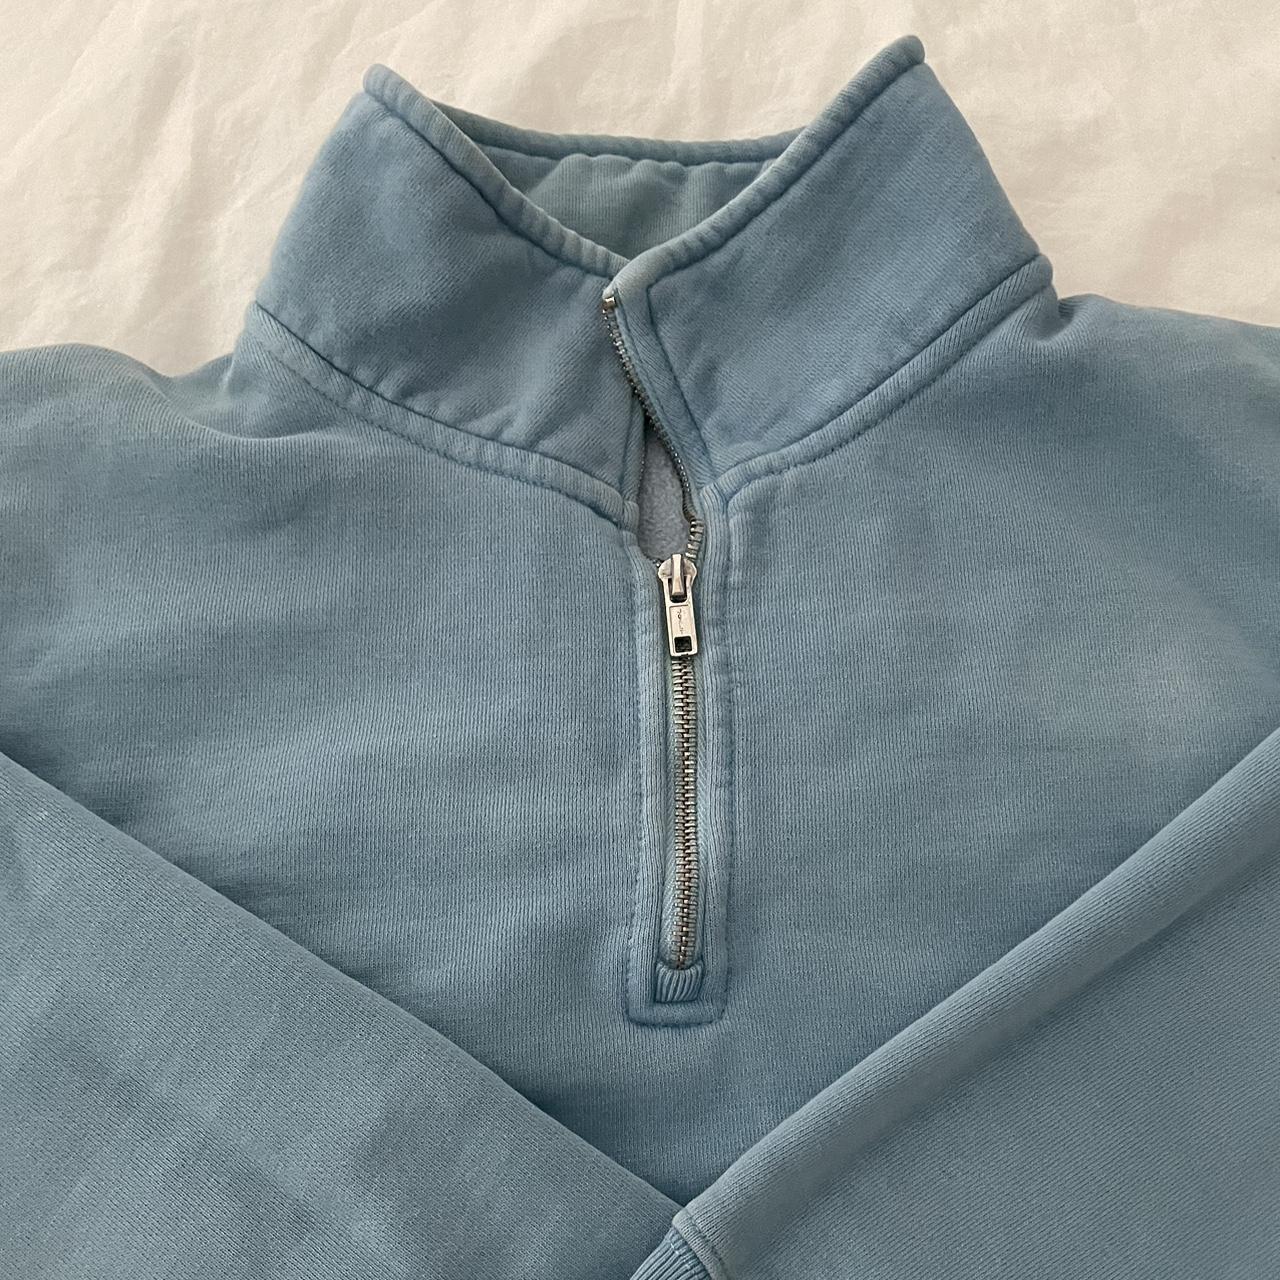 Brandy Melville Half Zip Sweatshirt Excellent condition - Depop